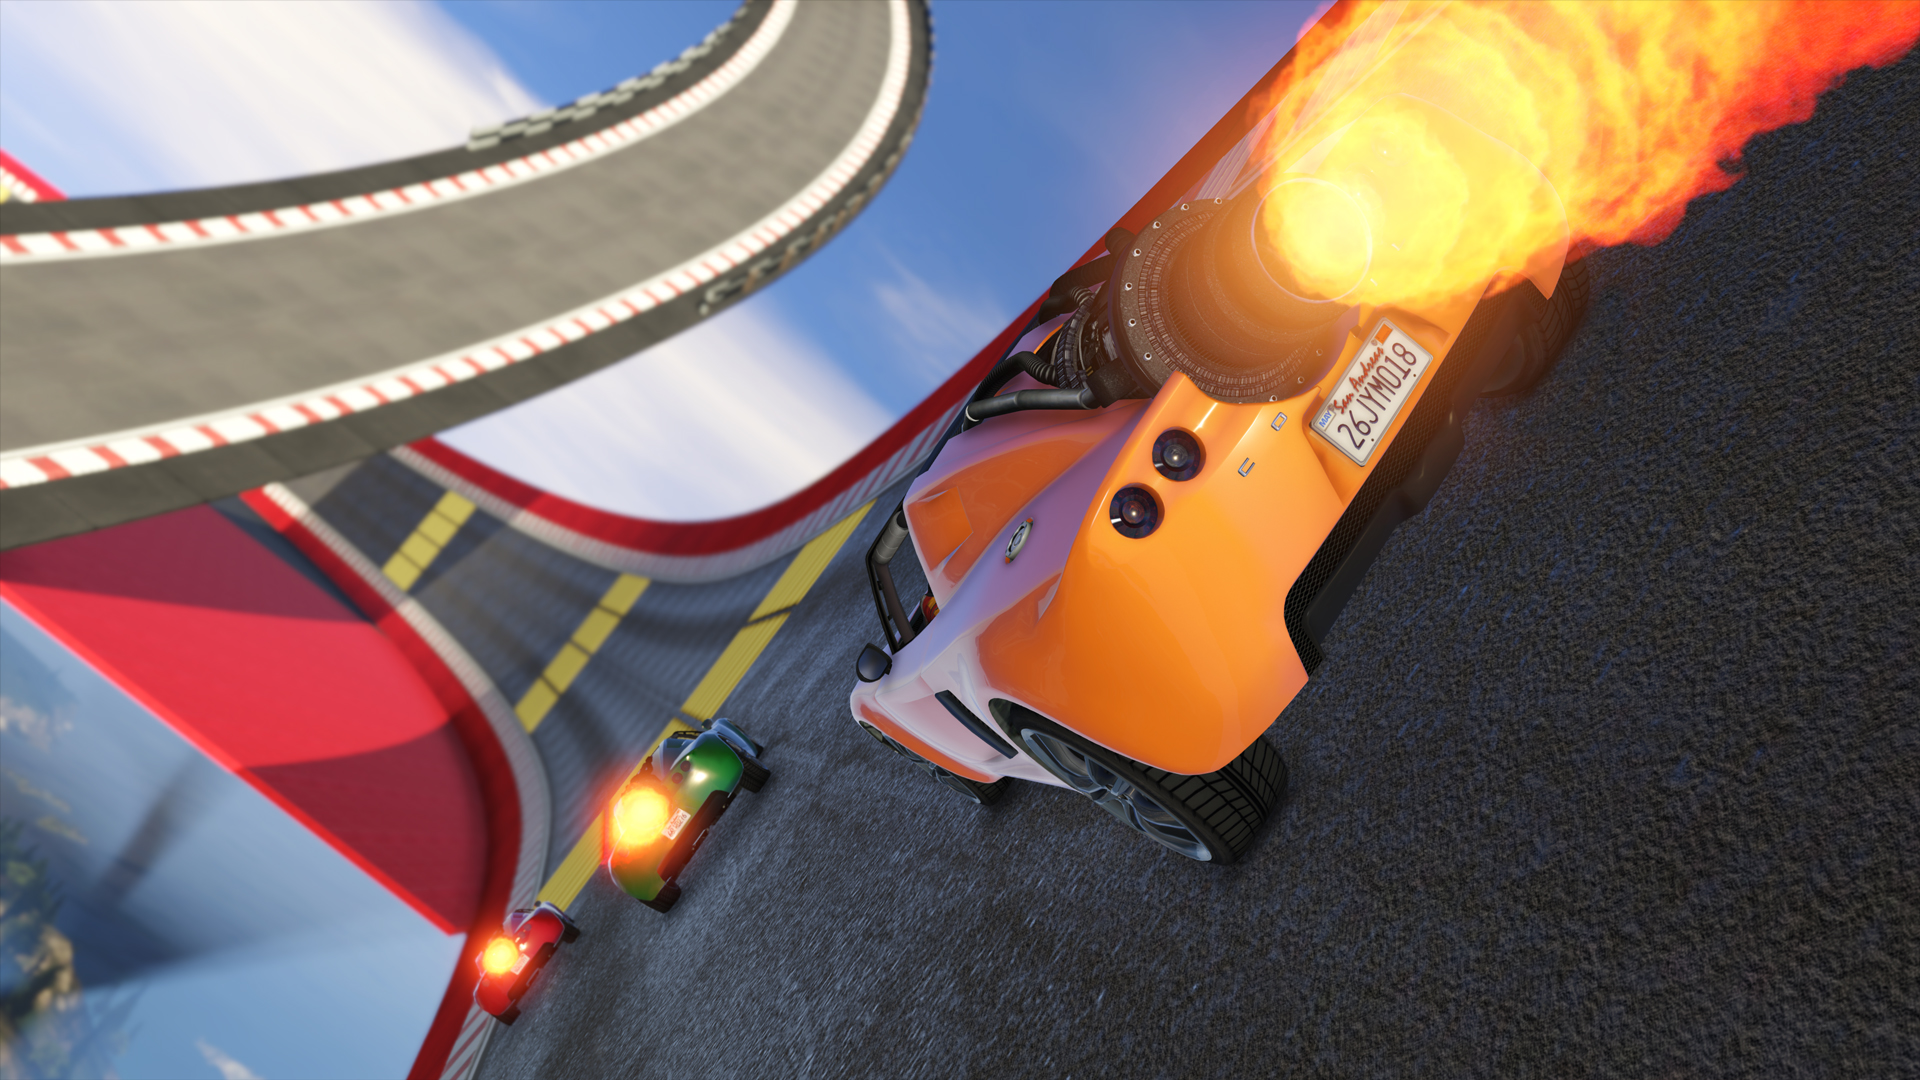 GTA 5 ganha três carros em atualização de corridas acrobáticas